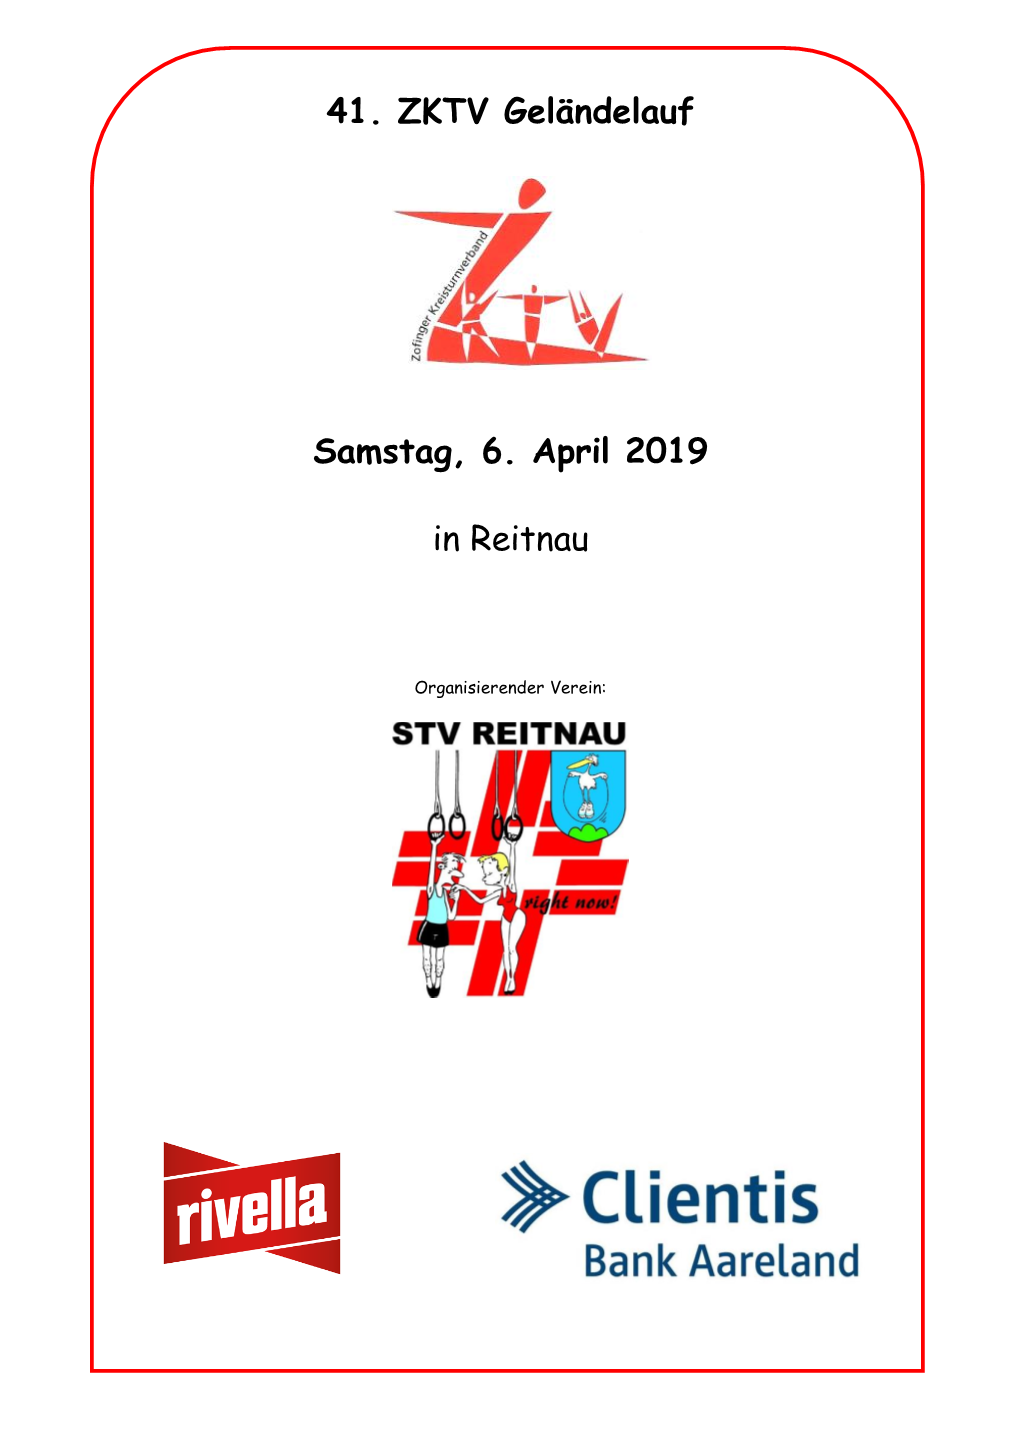 41. ZKTV Geländelauf Samstag, 6. April 2019 in Reitnau